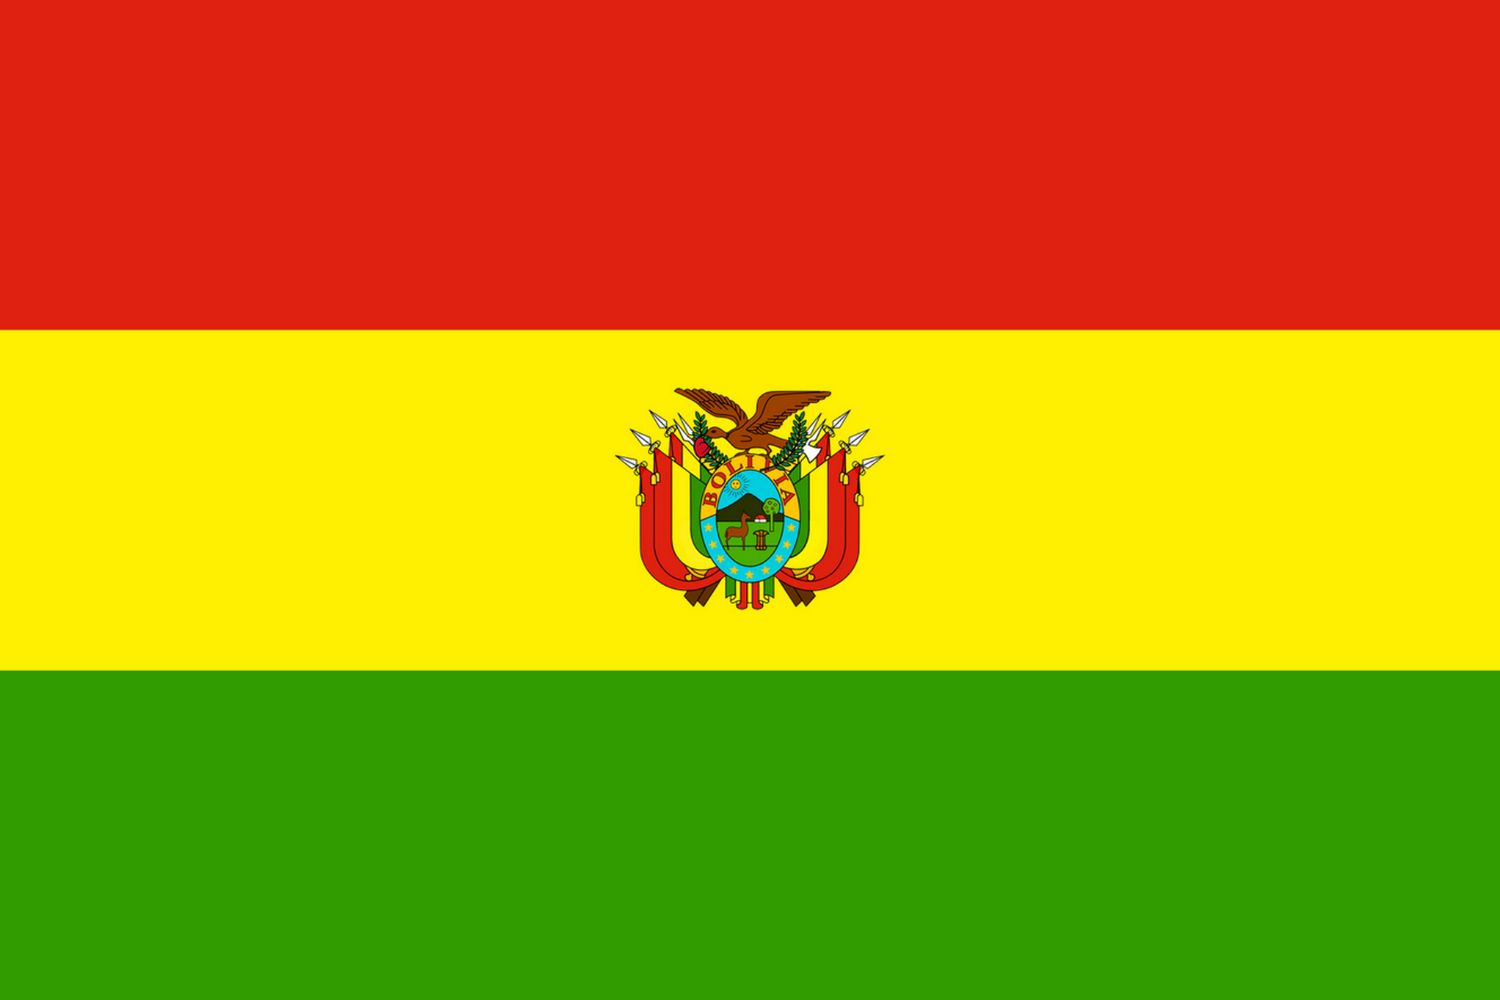 Bolivian flag